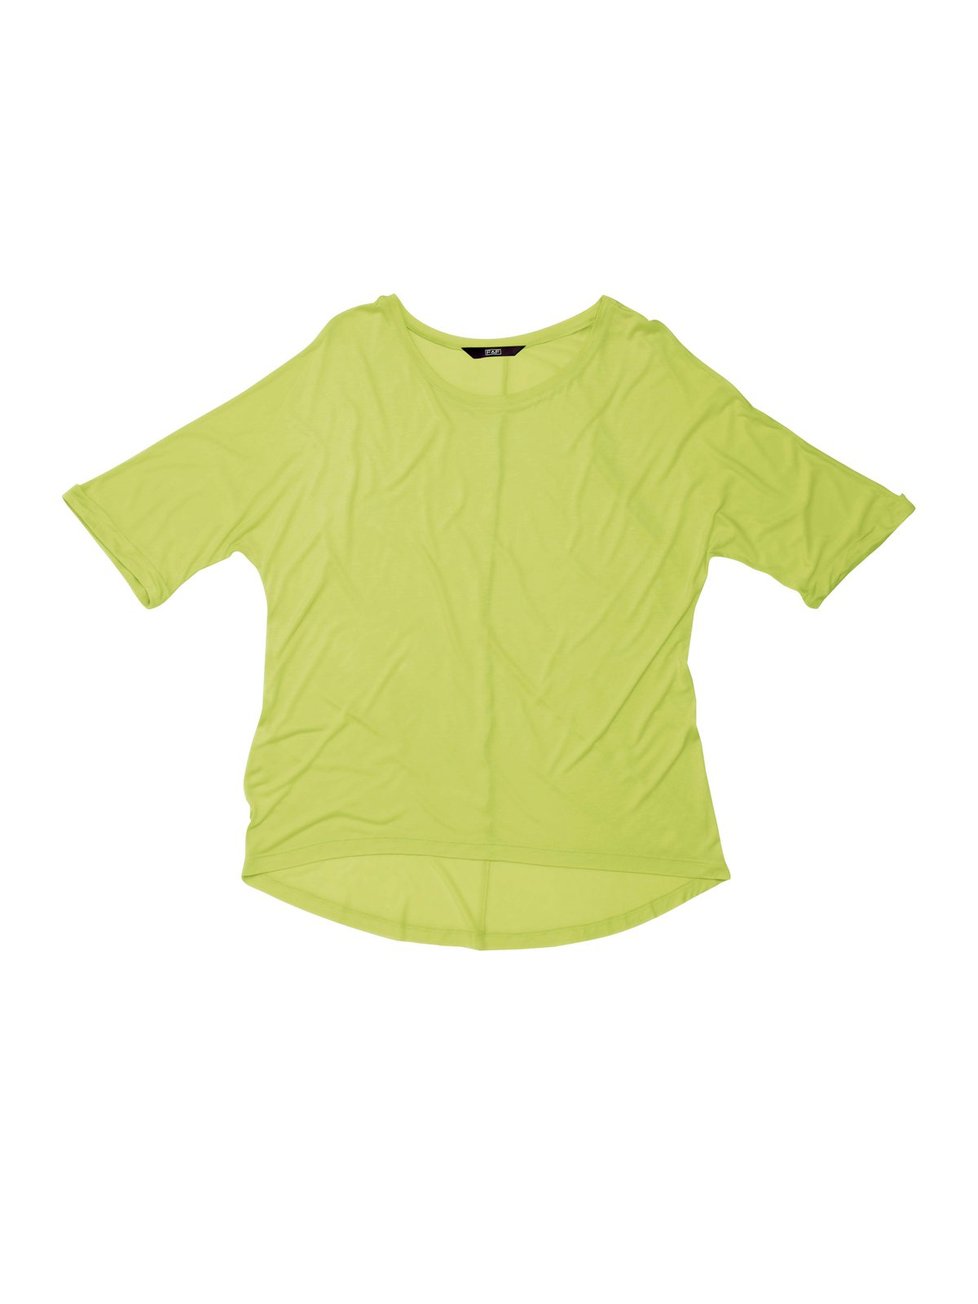 Světle žluté neonové tričko, F&F info o ceně v obchodě